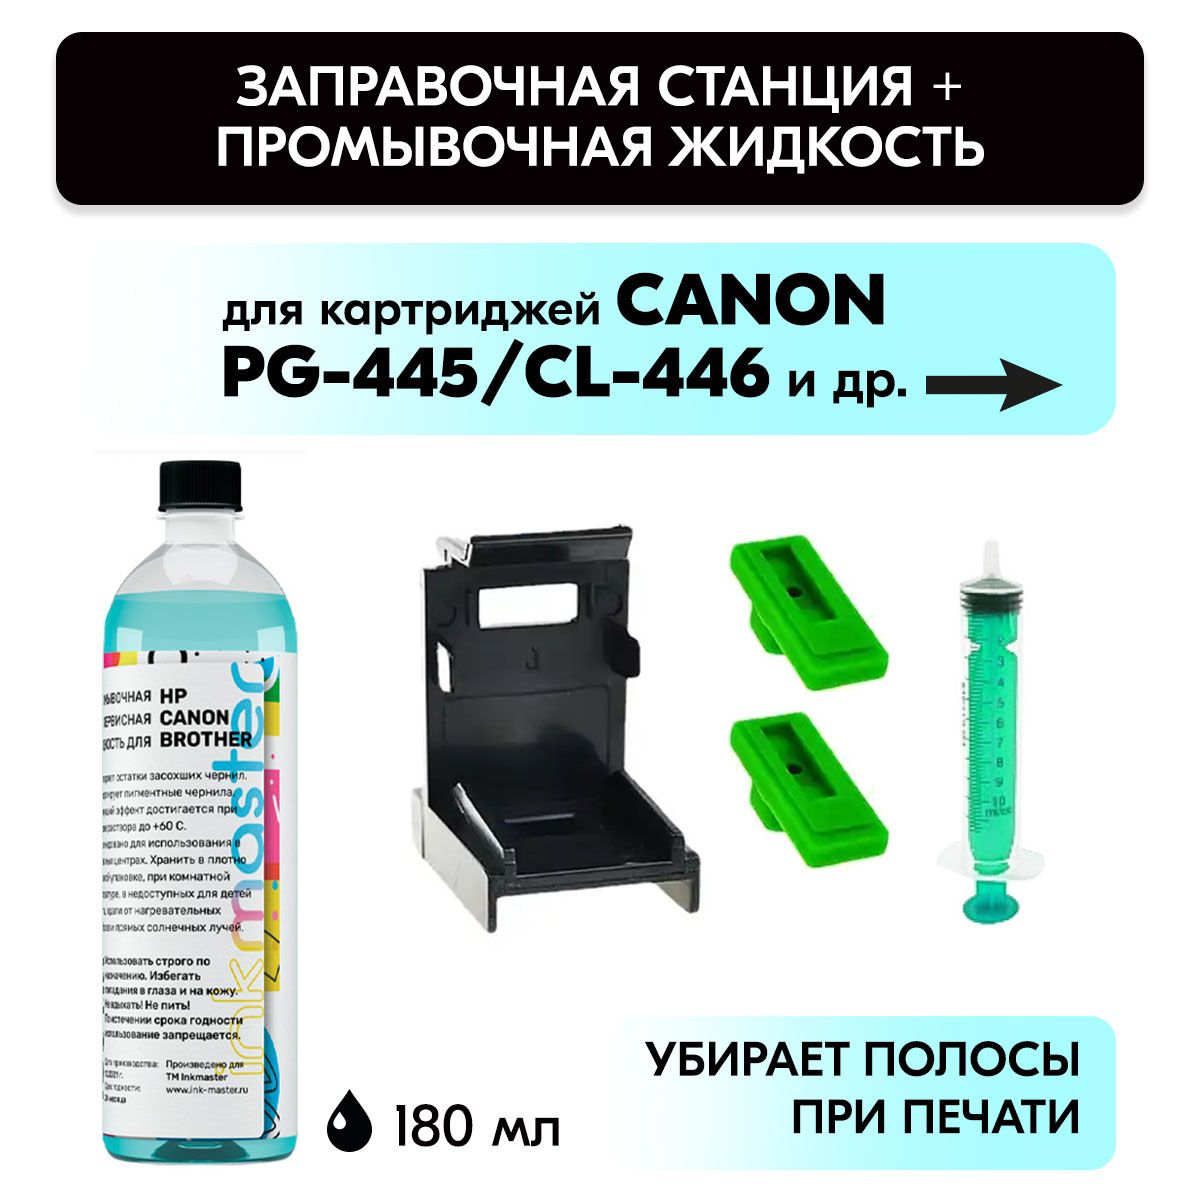 InkTec Промывочная жидкость TCS-100MP для печатающих головок и картриджей Canon и HP, 100 мл